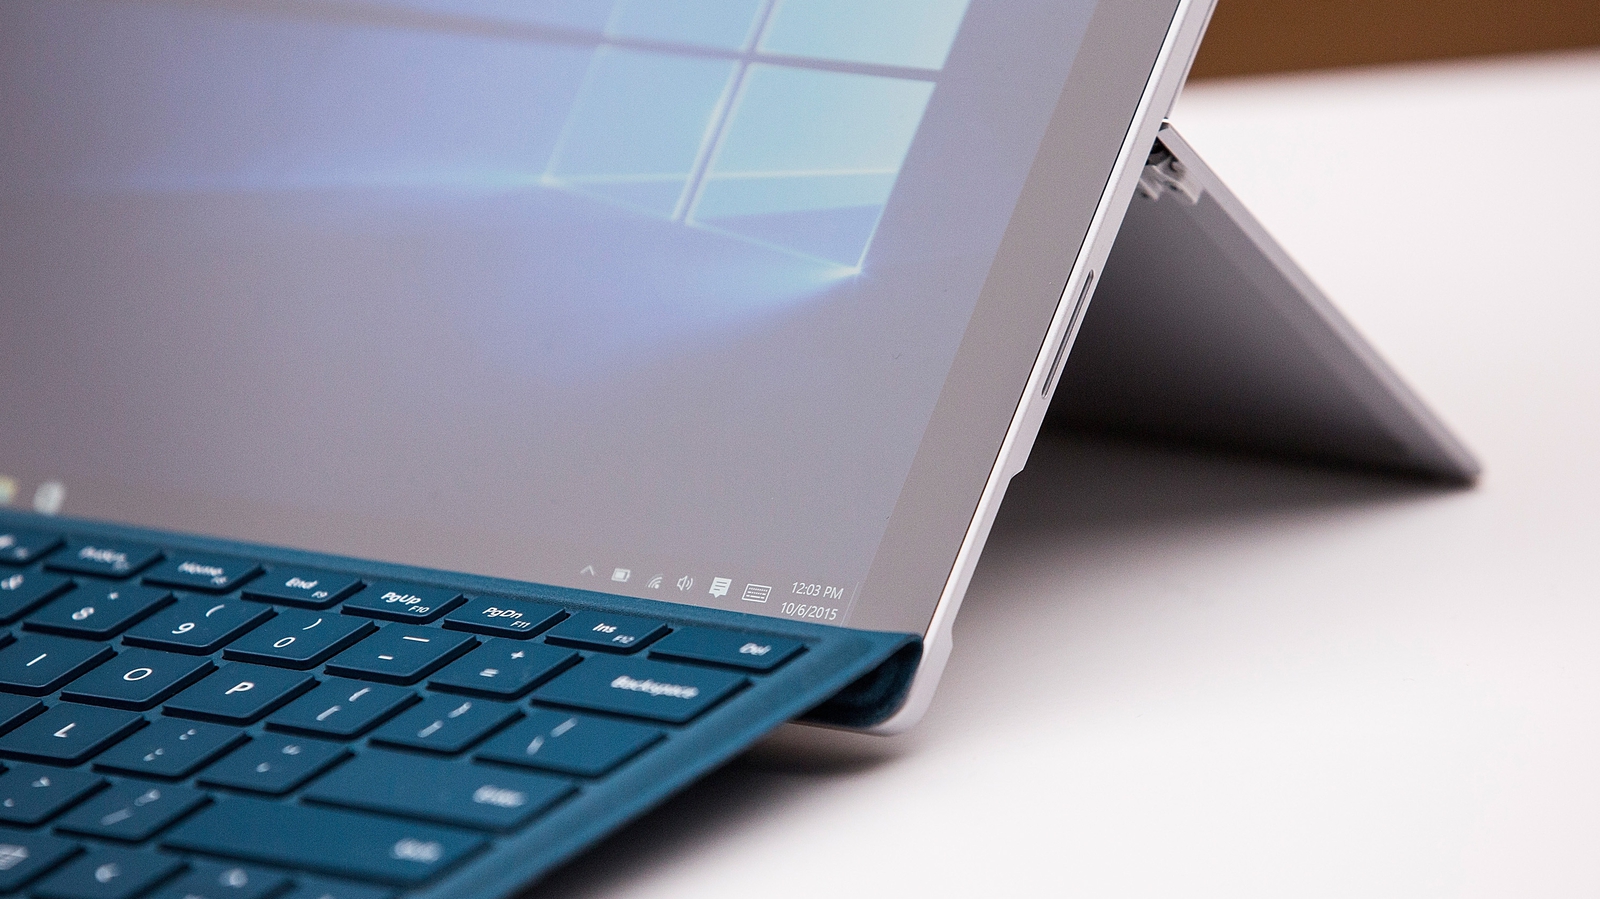 Surface pro 4 core m review